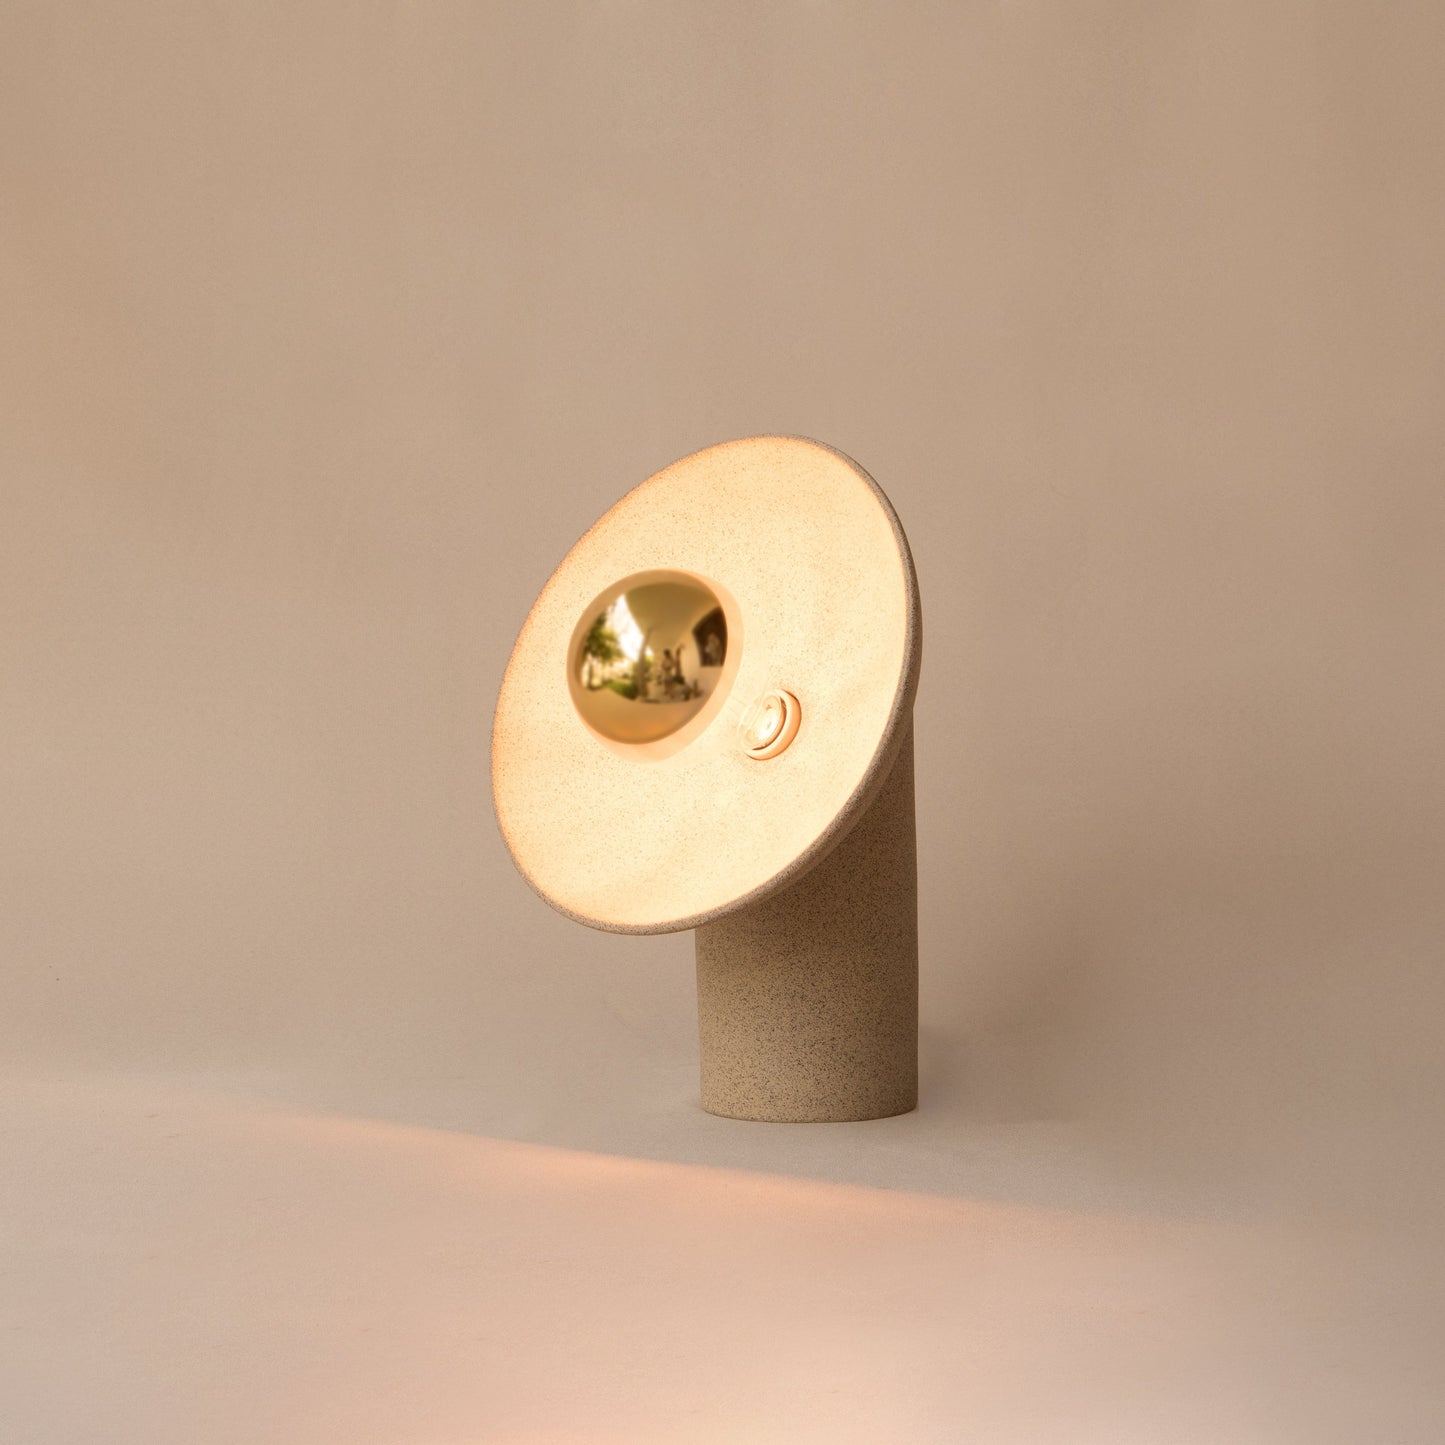 Venus lamp